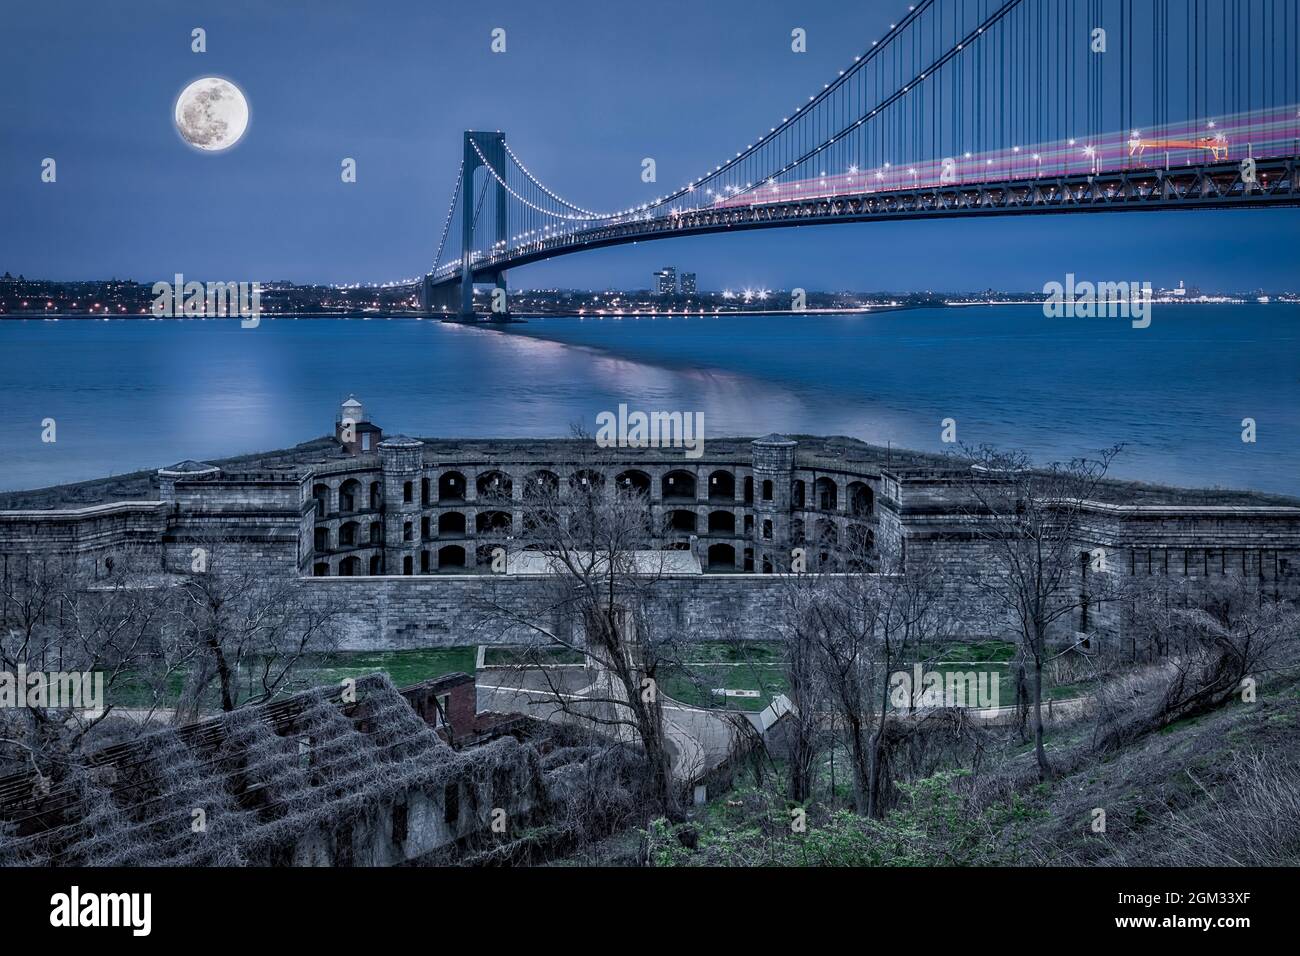 Verrazano Narrows Bridge Full Moon - Vista a Fort Wadsworth, el Verrazano Narrows Bridge, el puerto de Nueva York bajo una luna llena durante la hora azul Foto de stock